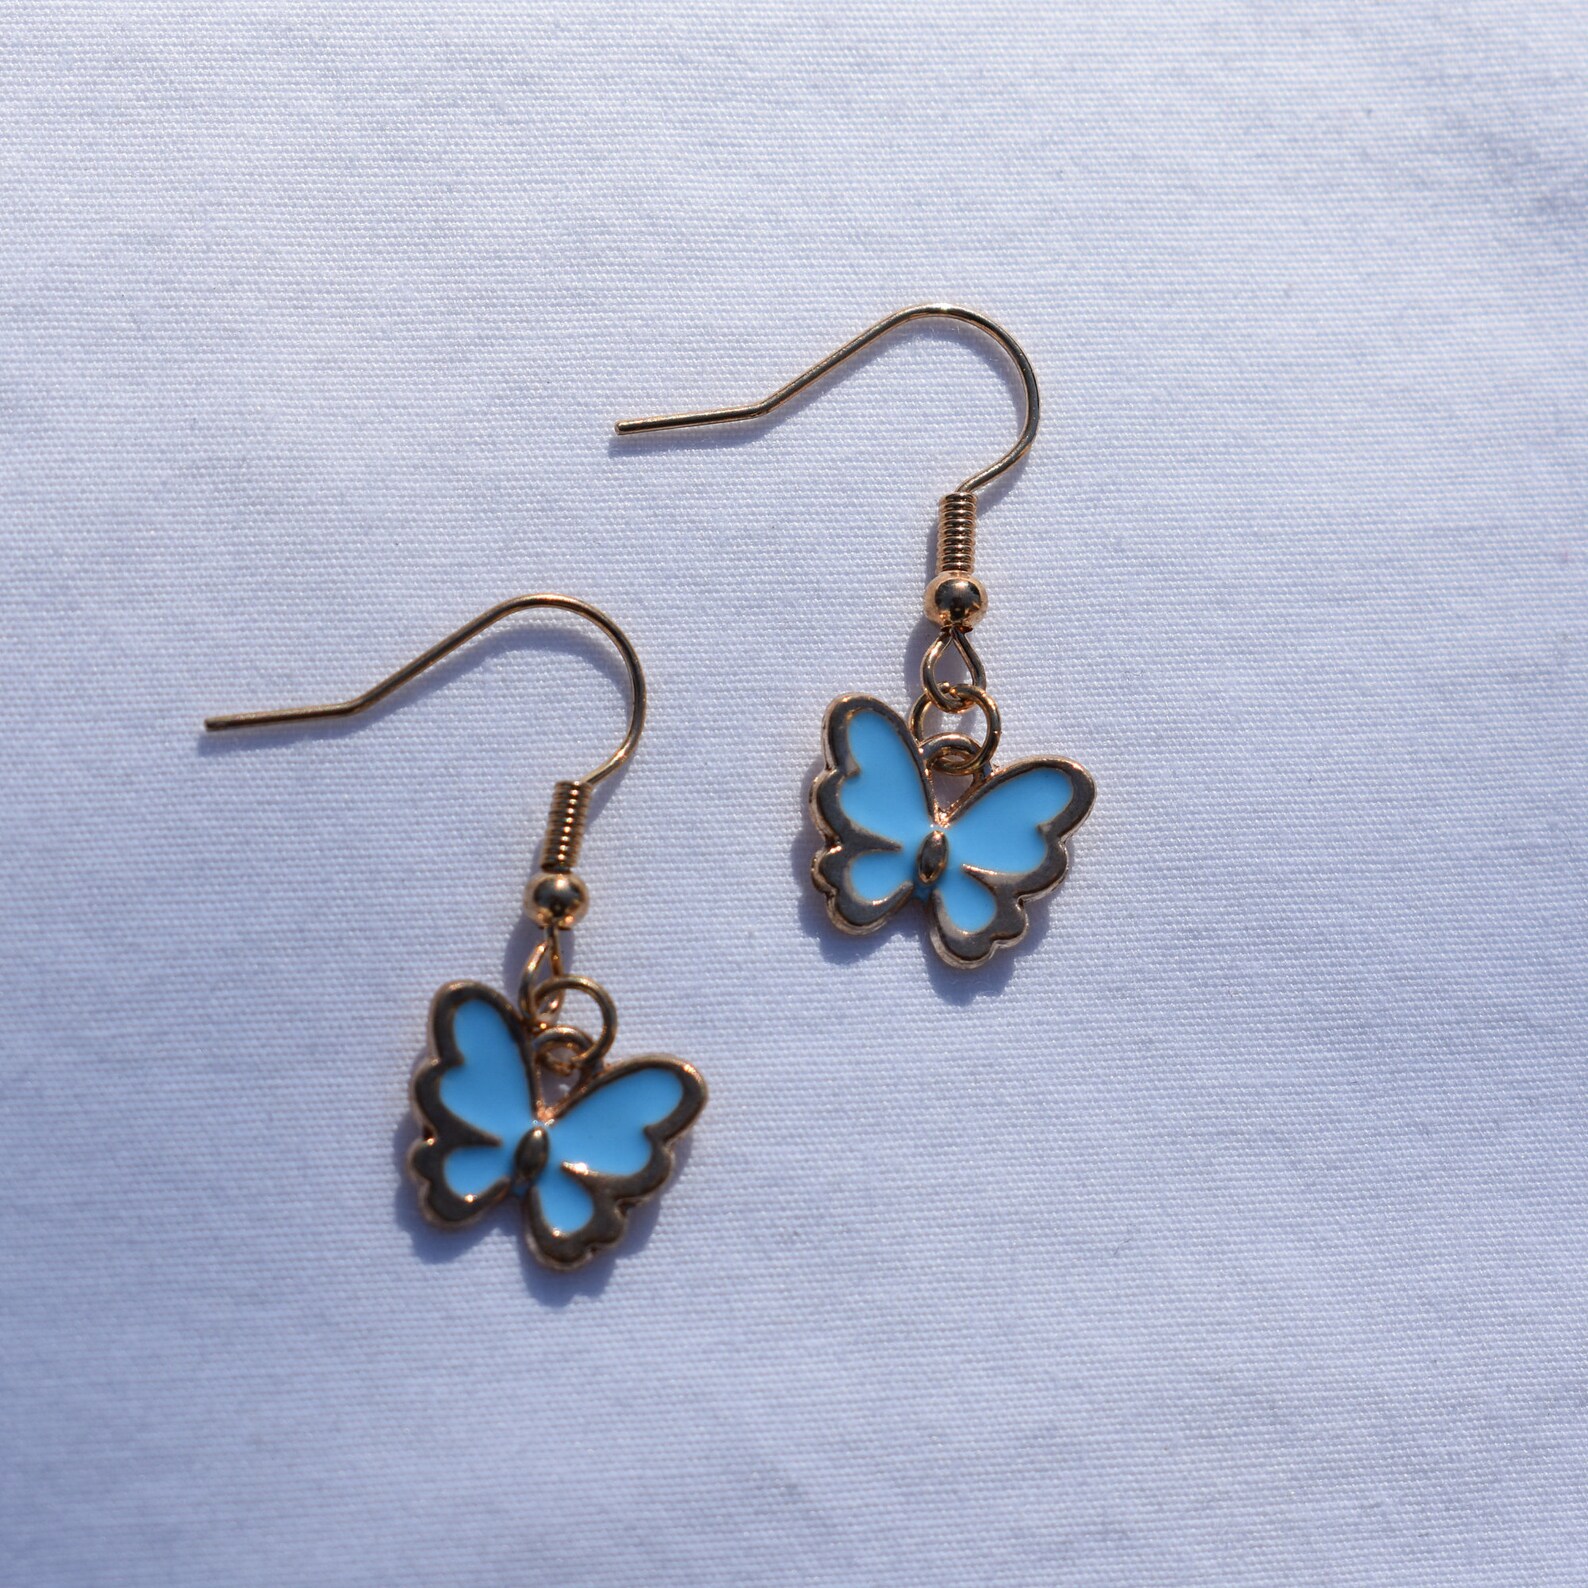 Butterfly earrings earrings butterflys Cute earrings Gift | Etsy